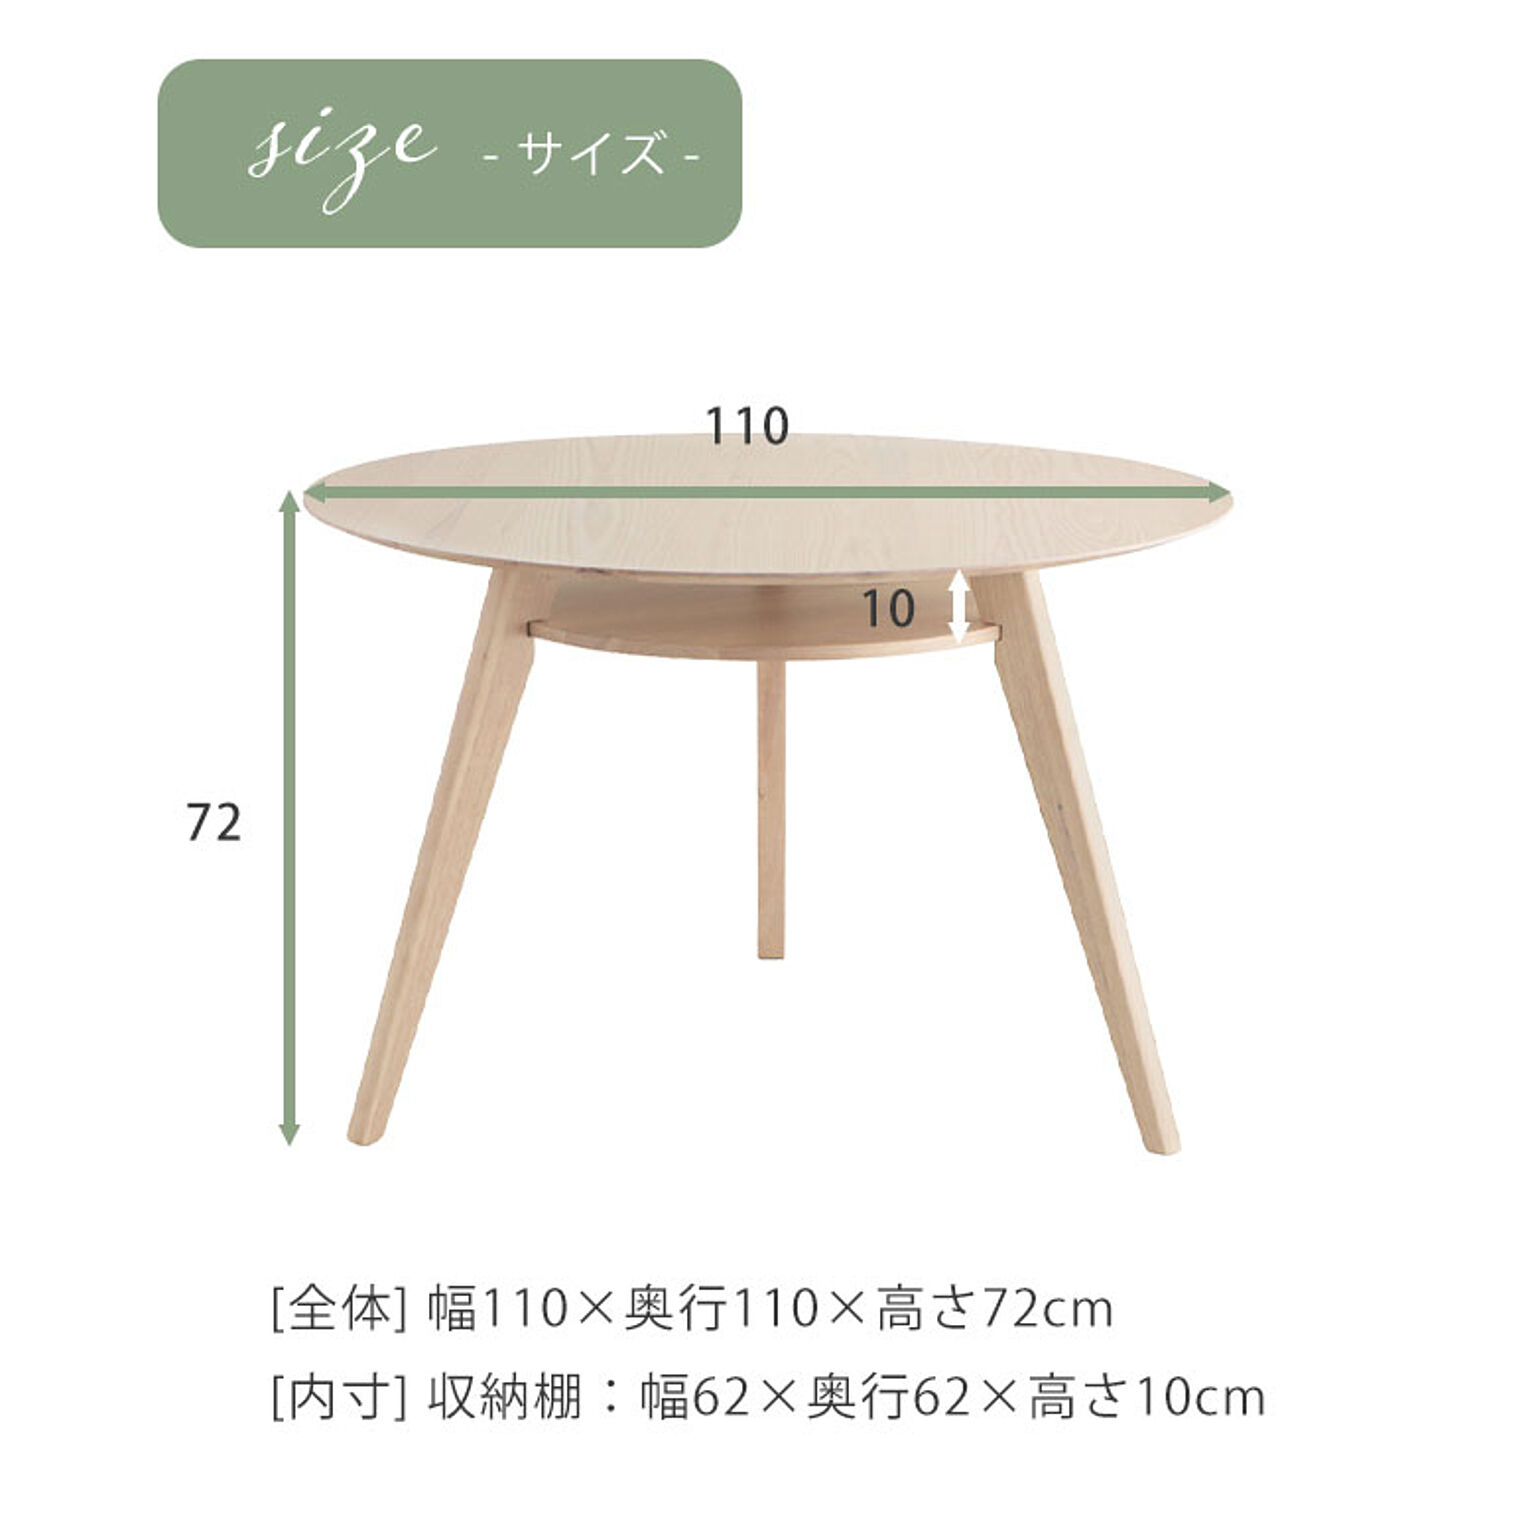 ダイニングテーブル 丸テーブル 円形ダイニングテーブル 円卓 白 ホワイト 北欧 110cm 木製 ナチュラル モダン 可愛い シンプル カフェ風 無垢 SRC